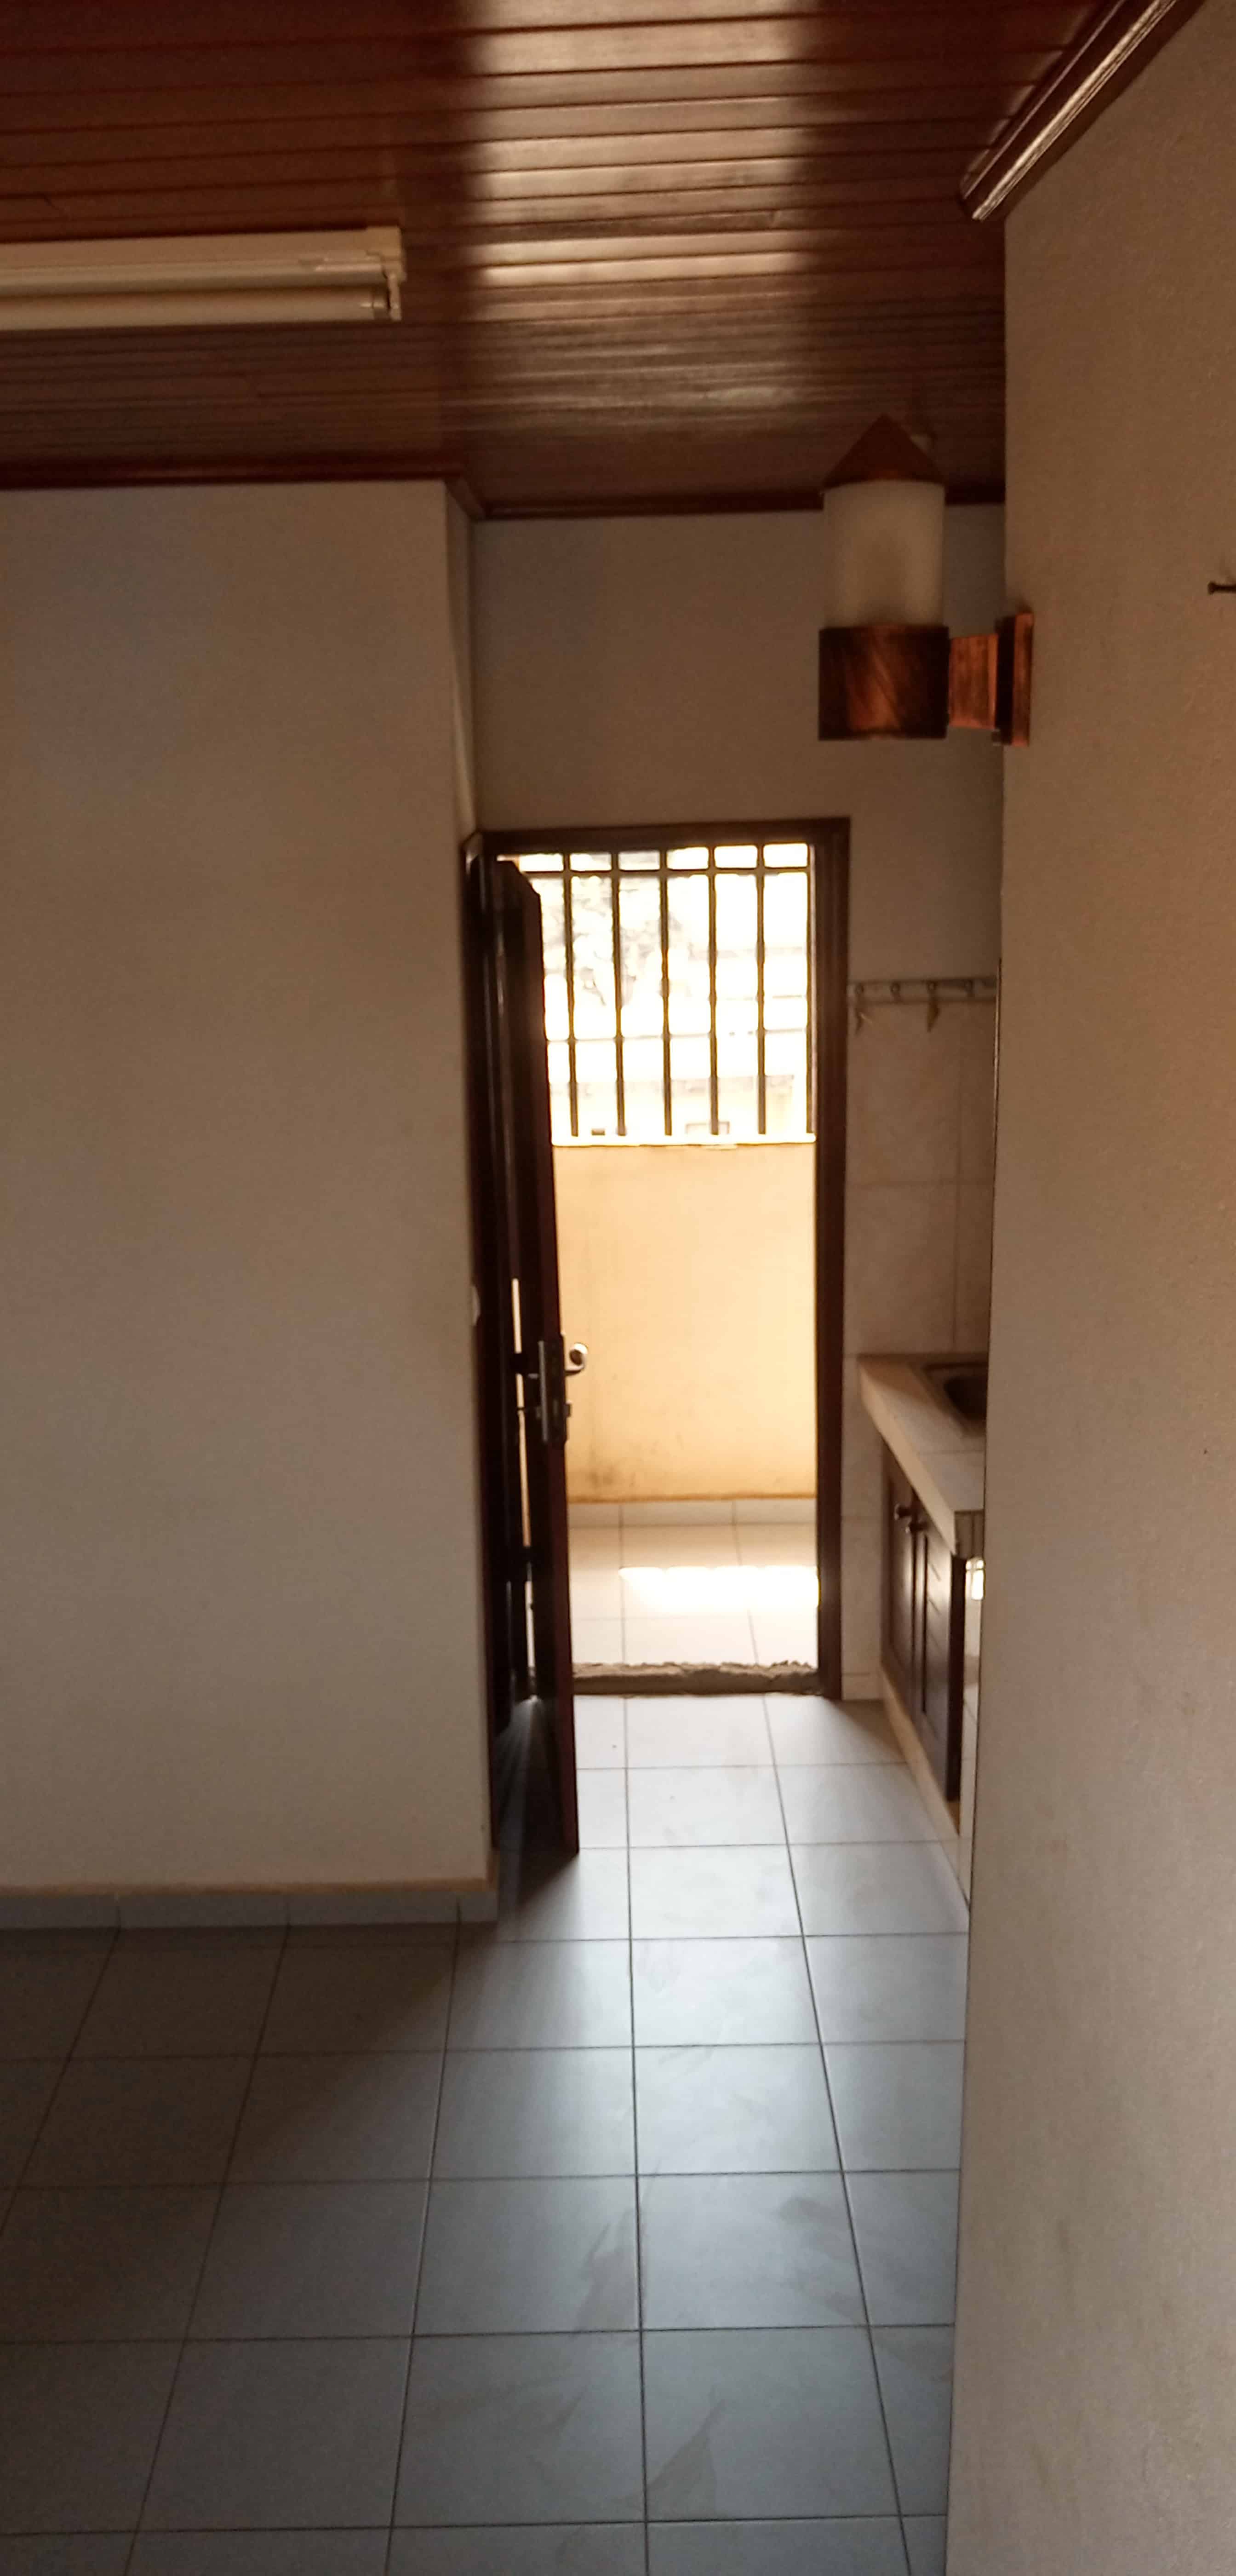 Studio to rent - Yaoundé, Essos, Hôtel du plateau - 80 000 FCFA / month